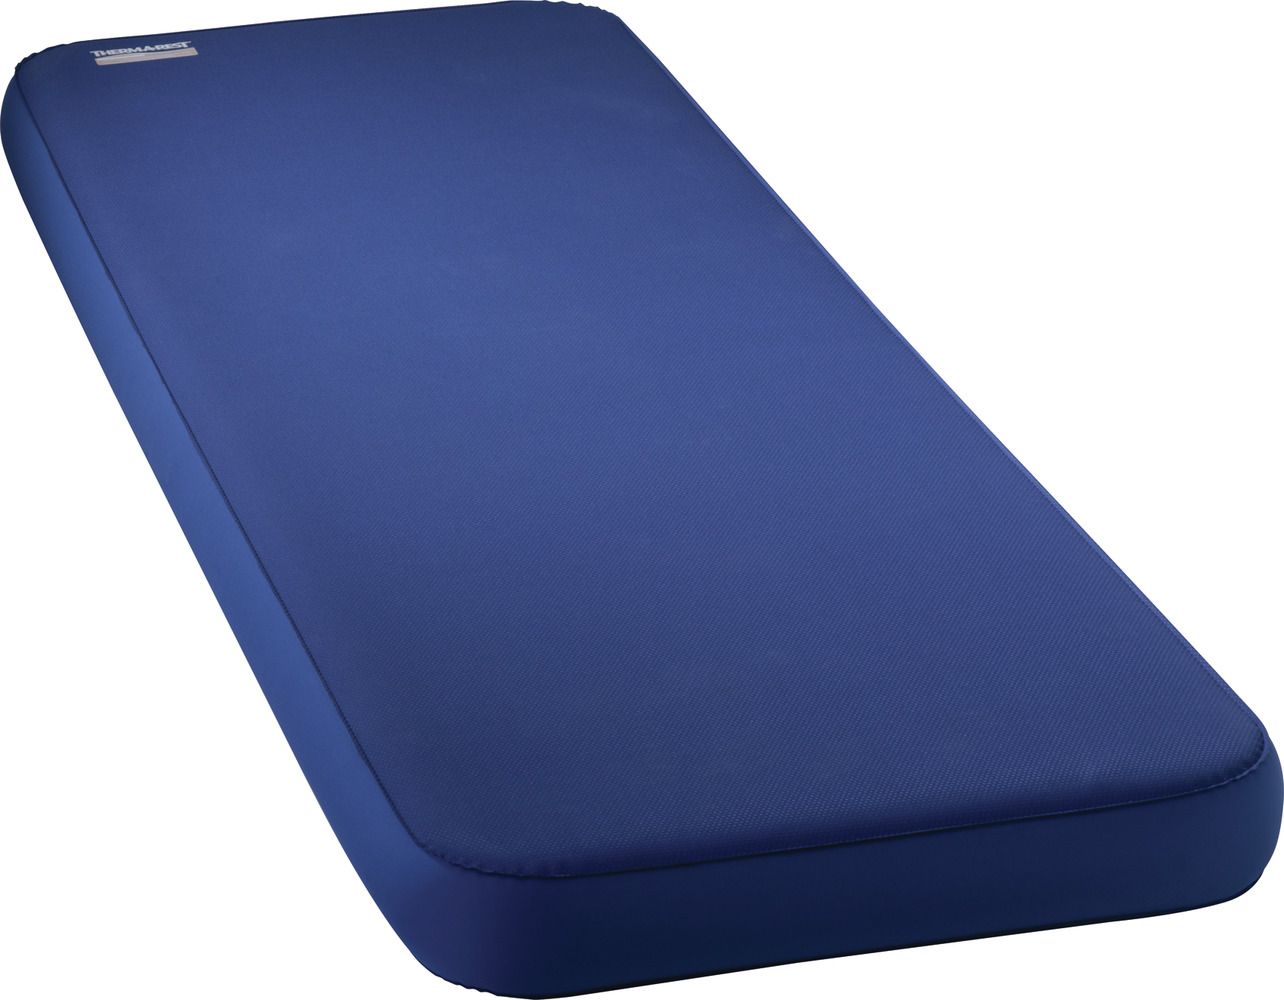 thermarest foam mat below or ontop air mattress